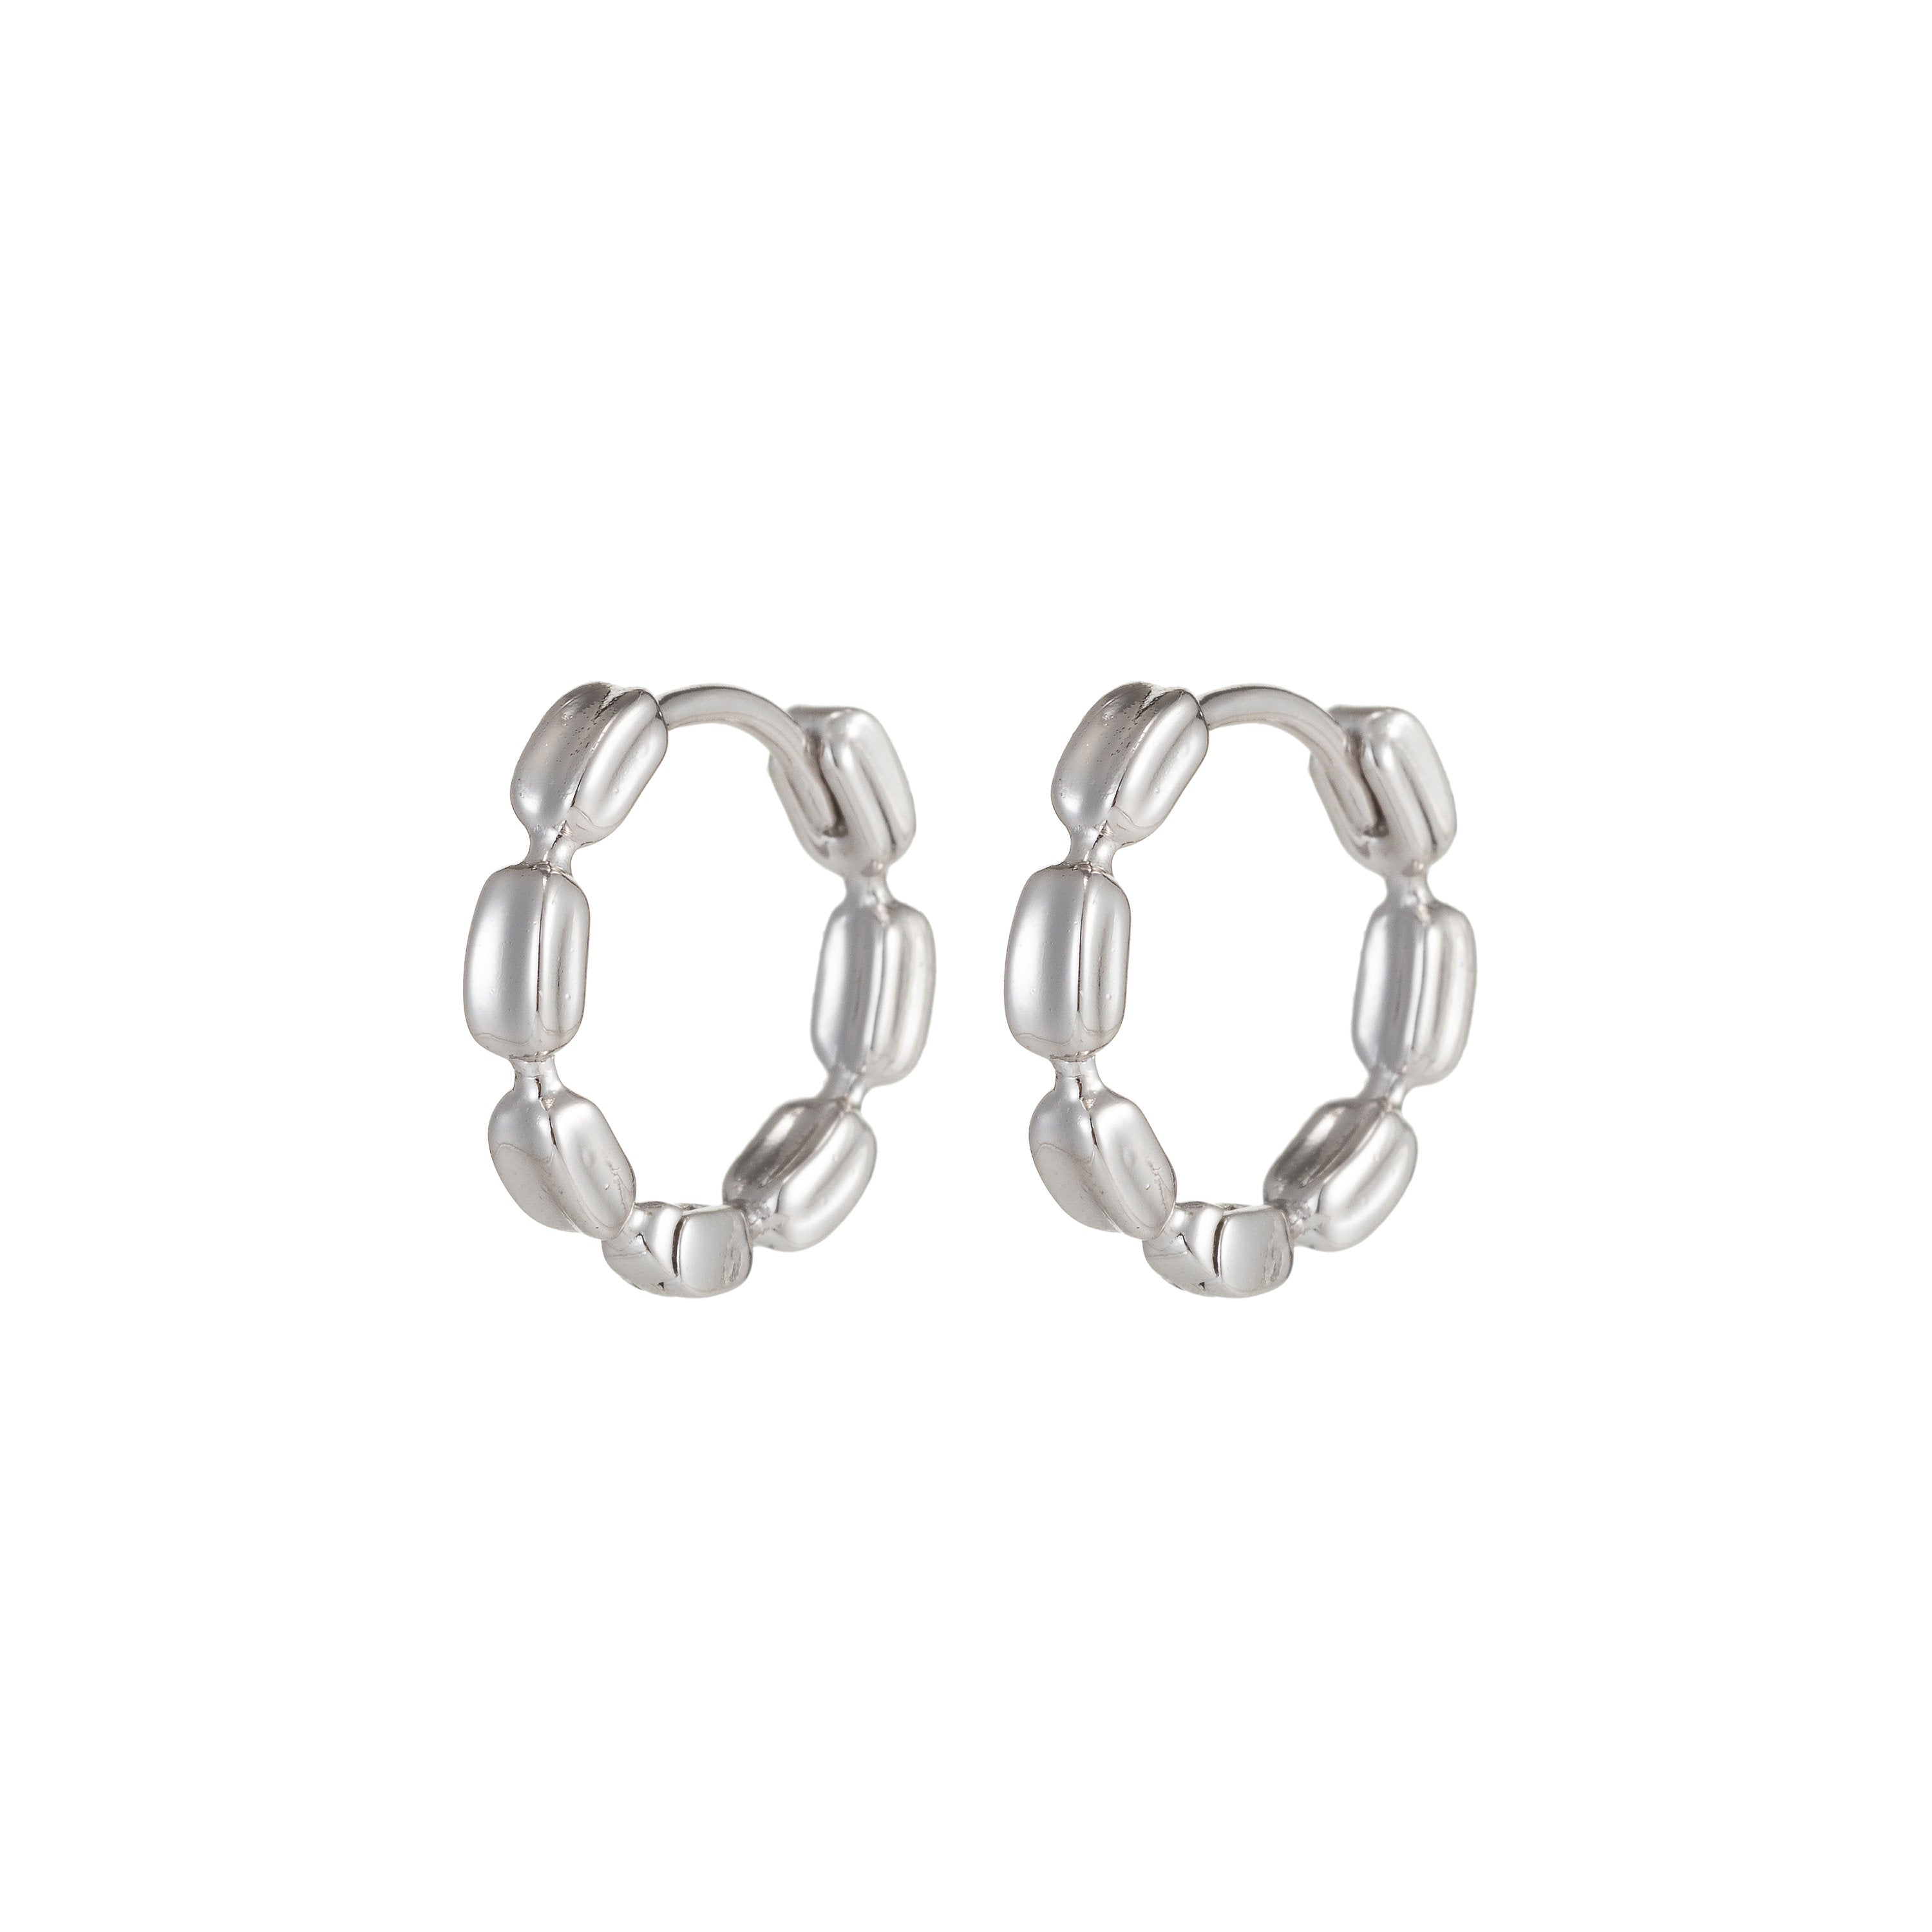 Small Silver Hoop Earrings, Silver Huggie Earrings, Simple Hoop Earrings 15mm - DLUXCA